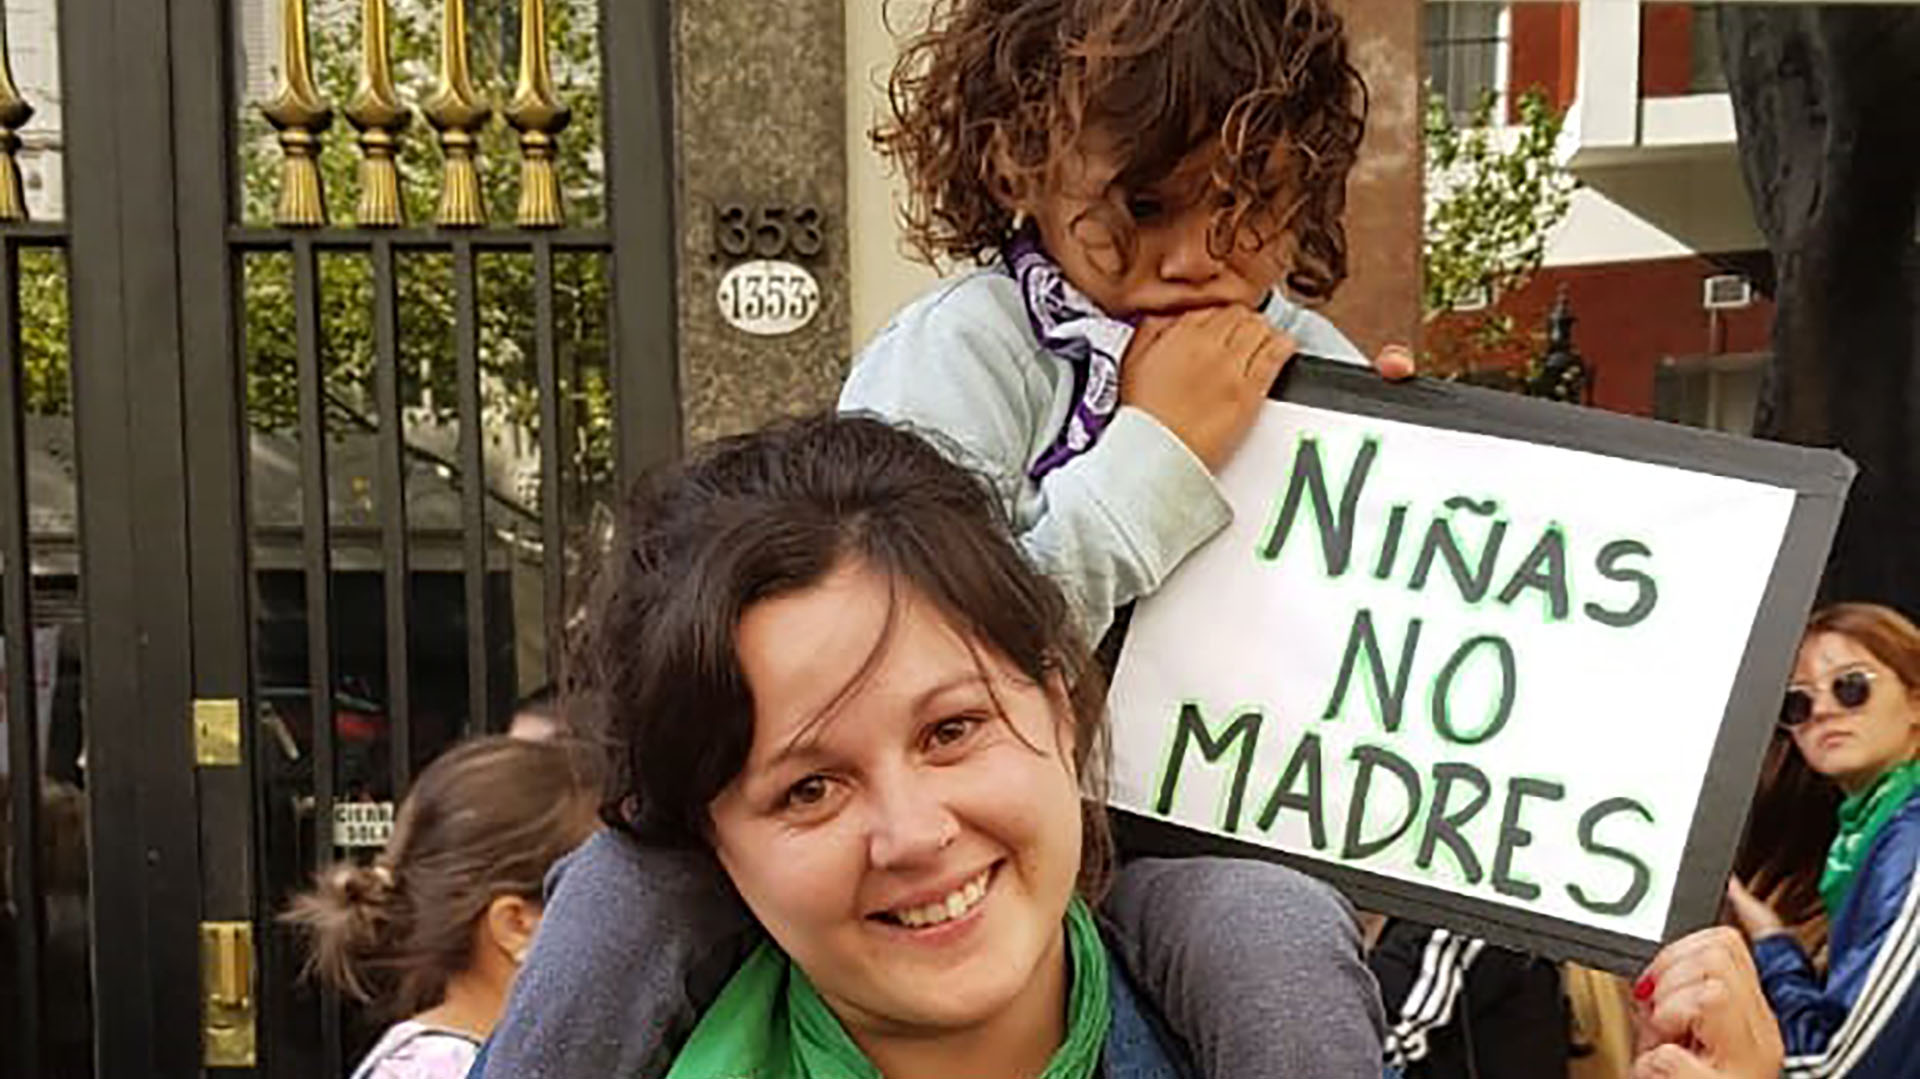 "Niñas no madres", una de las consignas durante las marchas a favor del aborto legal 